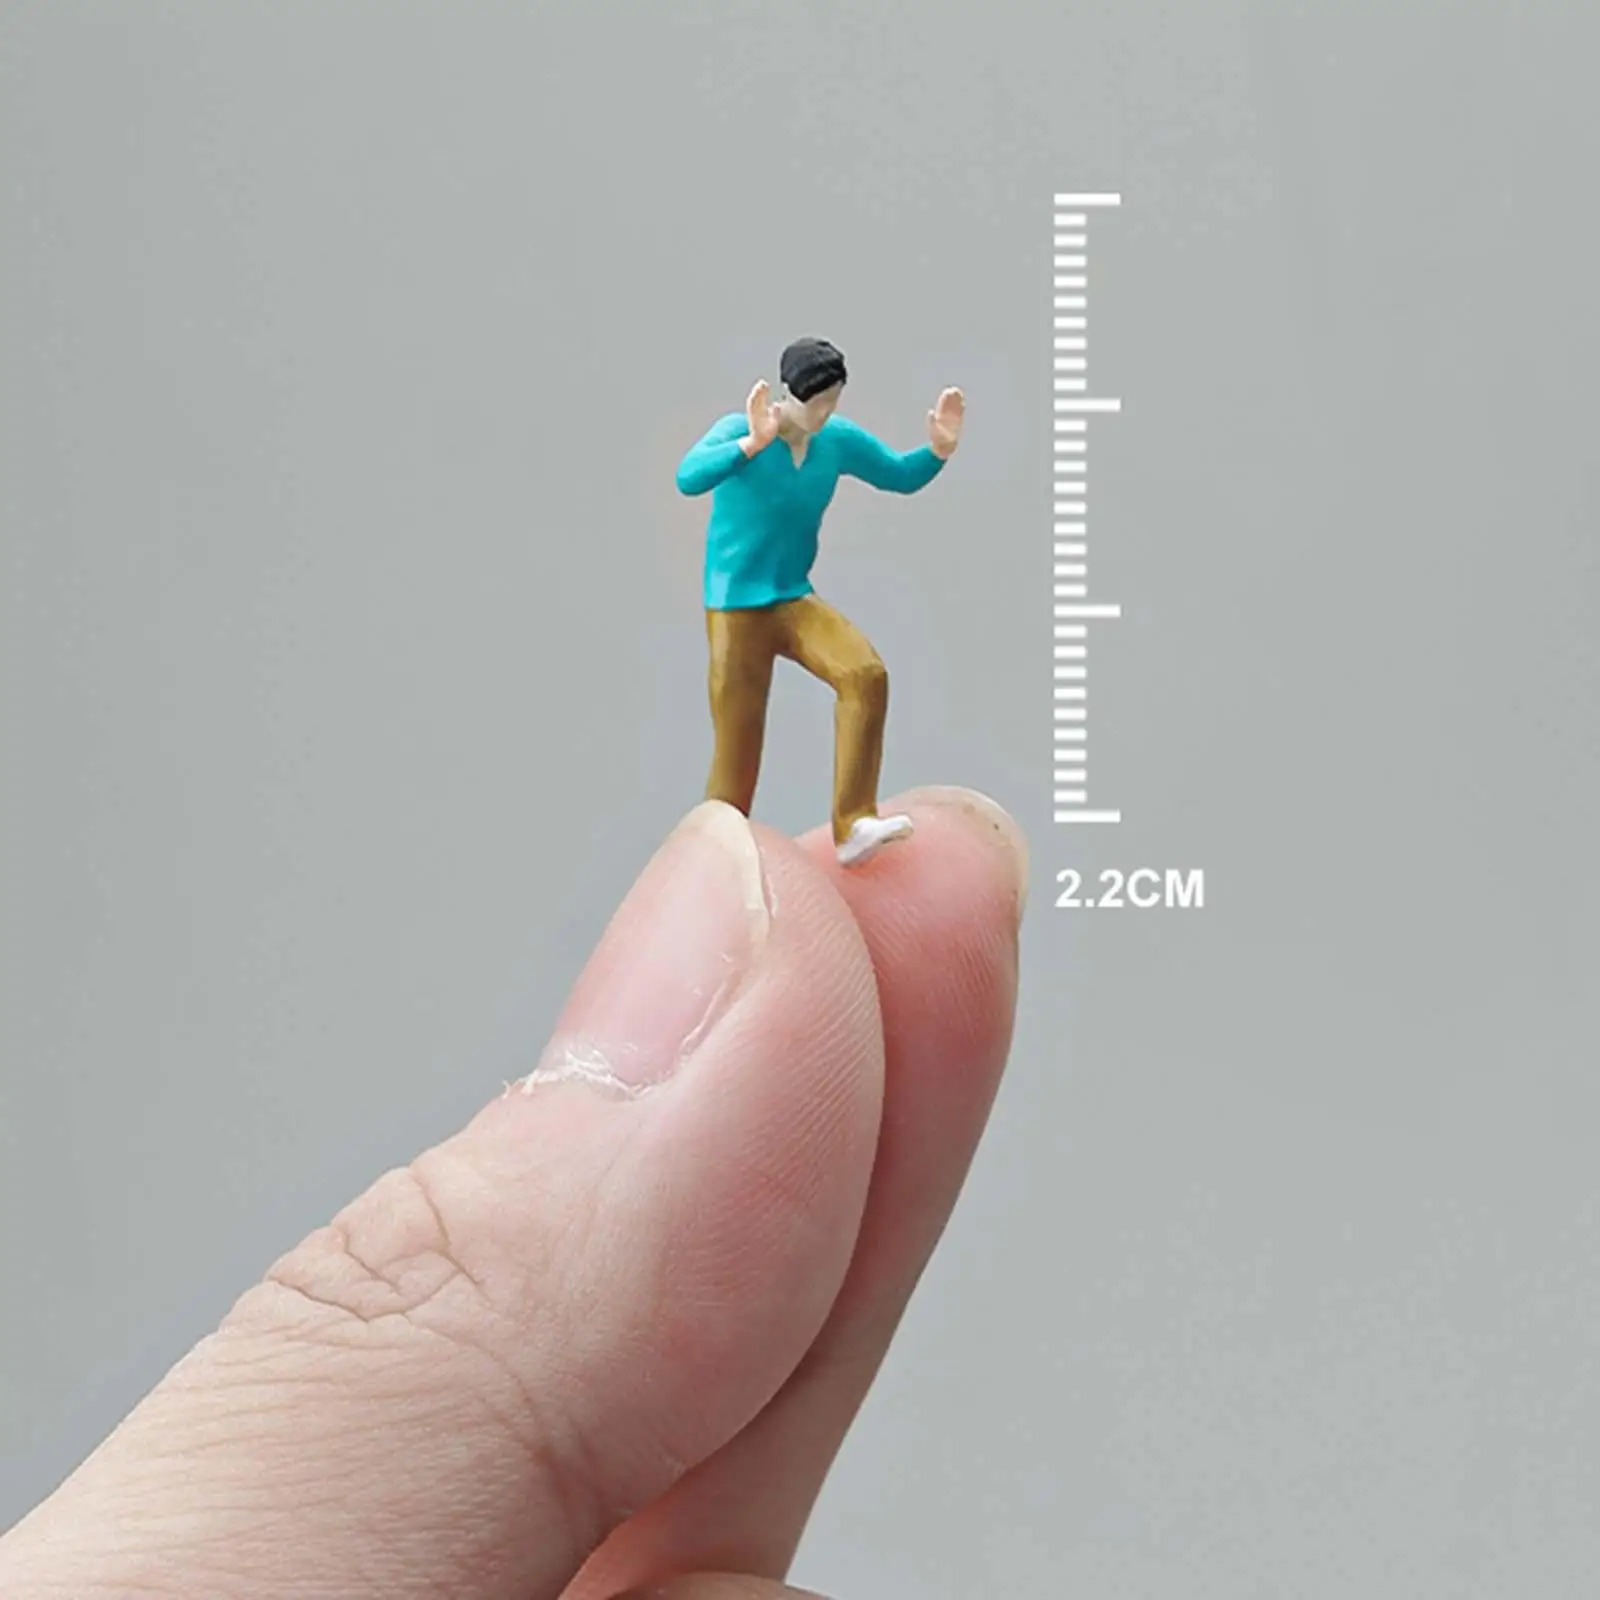 1/64 Miniature Model Figures Realistic Figures Trains Architectural Painted Figures 1/64 Boy Figures Miniature Scenes Decor